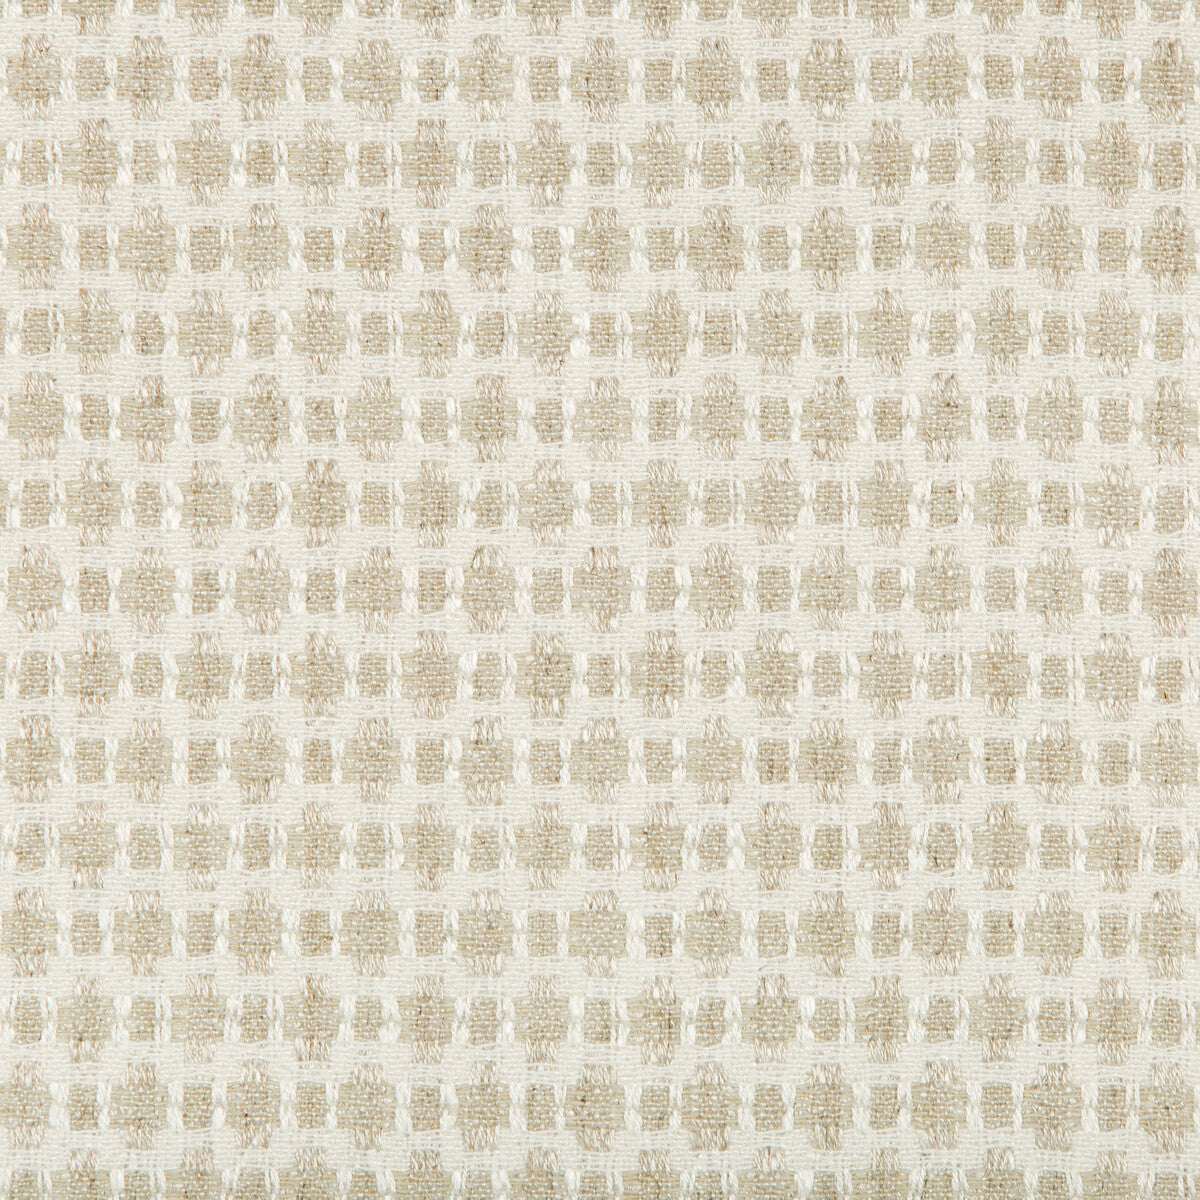 Kravet Design fabric in 35622-16 color - pattern 35622.16.0 - by Kravet Design